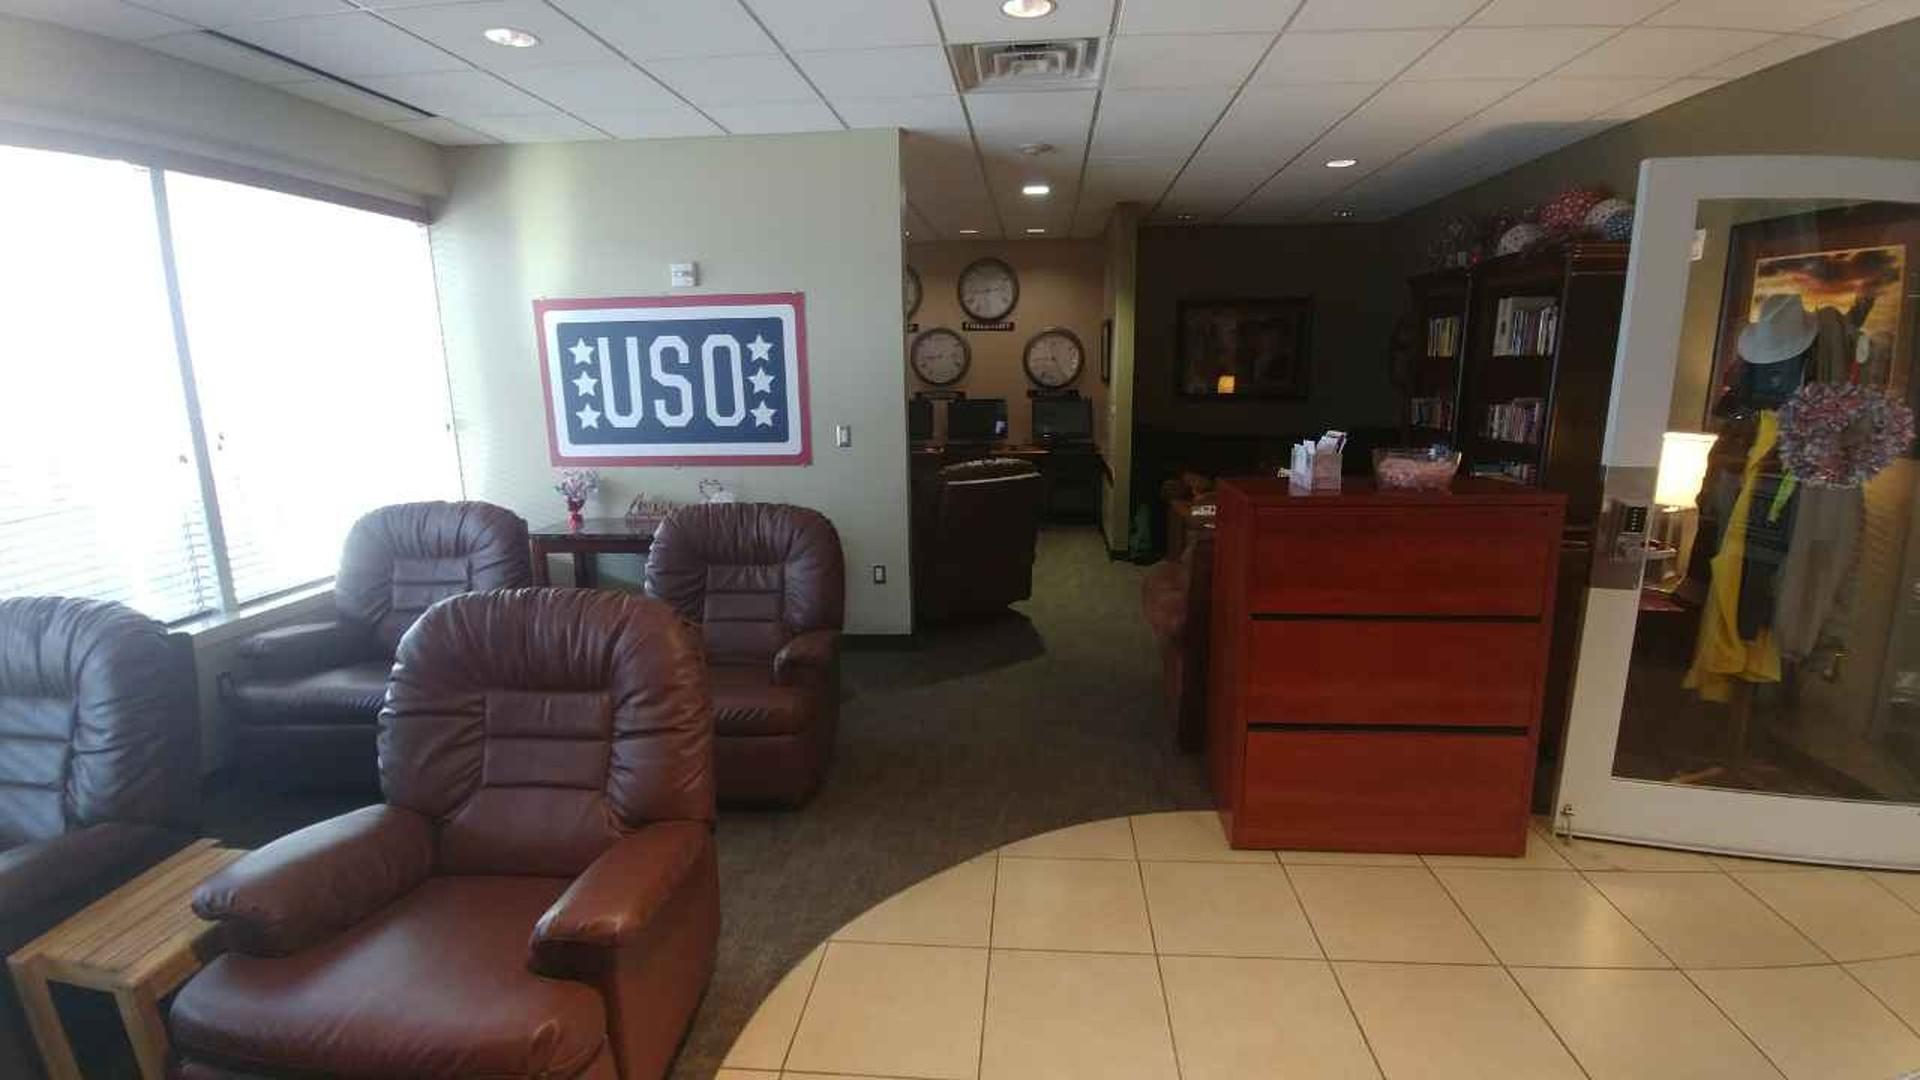 USO Lounge image 3 of 3